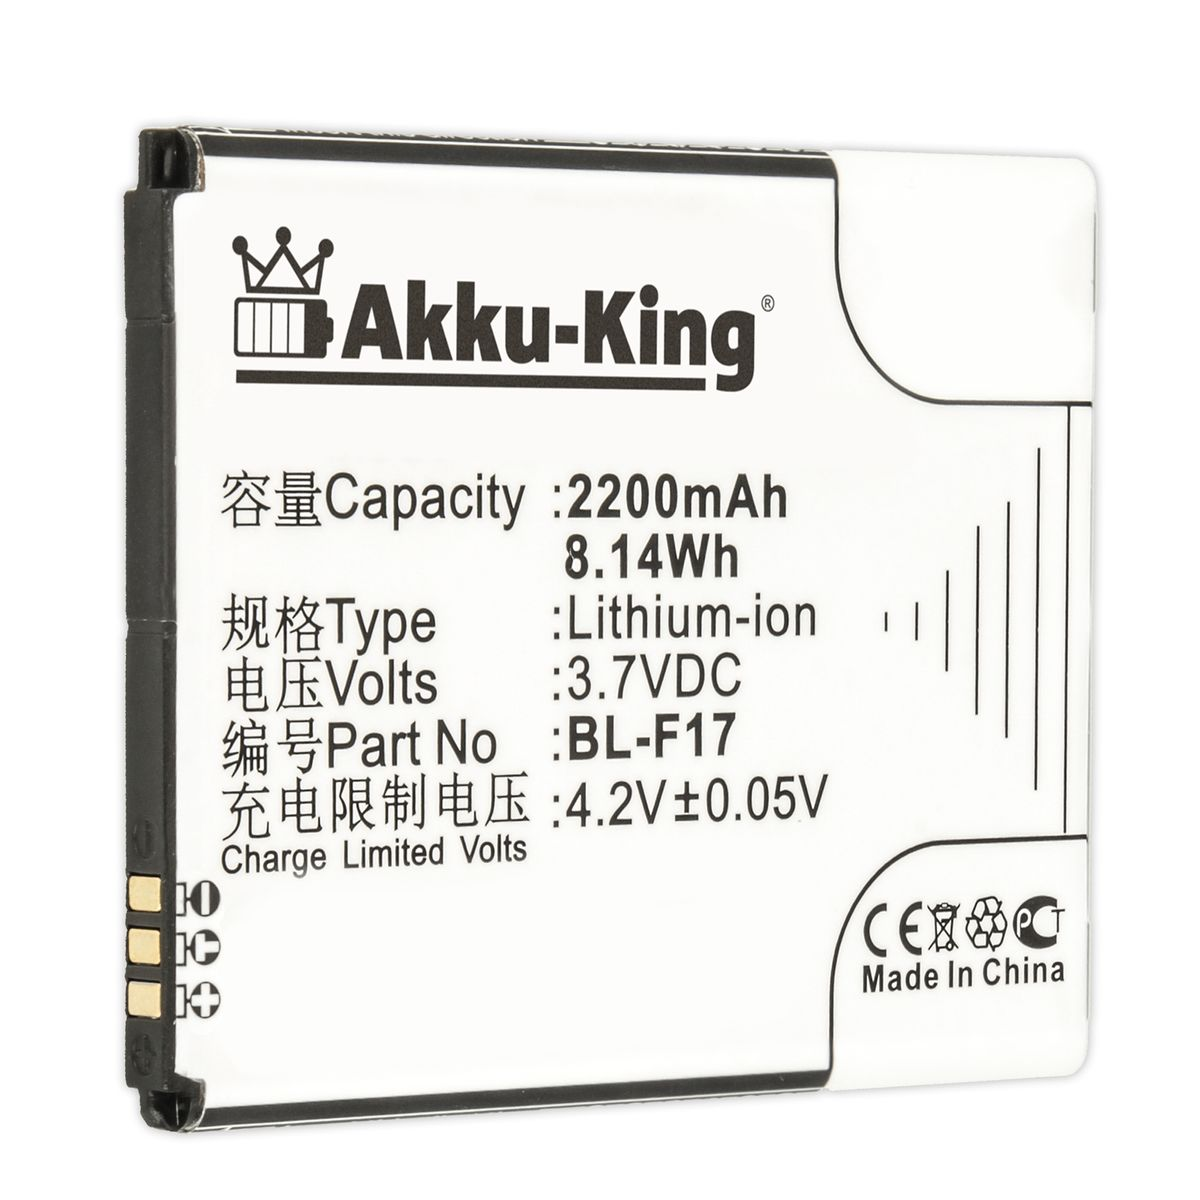 AKKU-KING Akku kompatibel mit Phicomm Handy-Akku, Li-Ion Volt, BL-F17 3.7 2200mAh